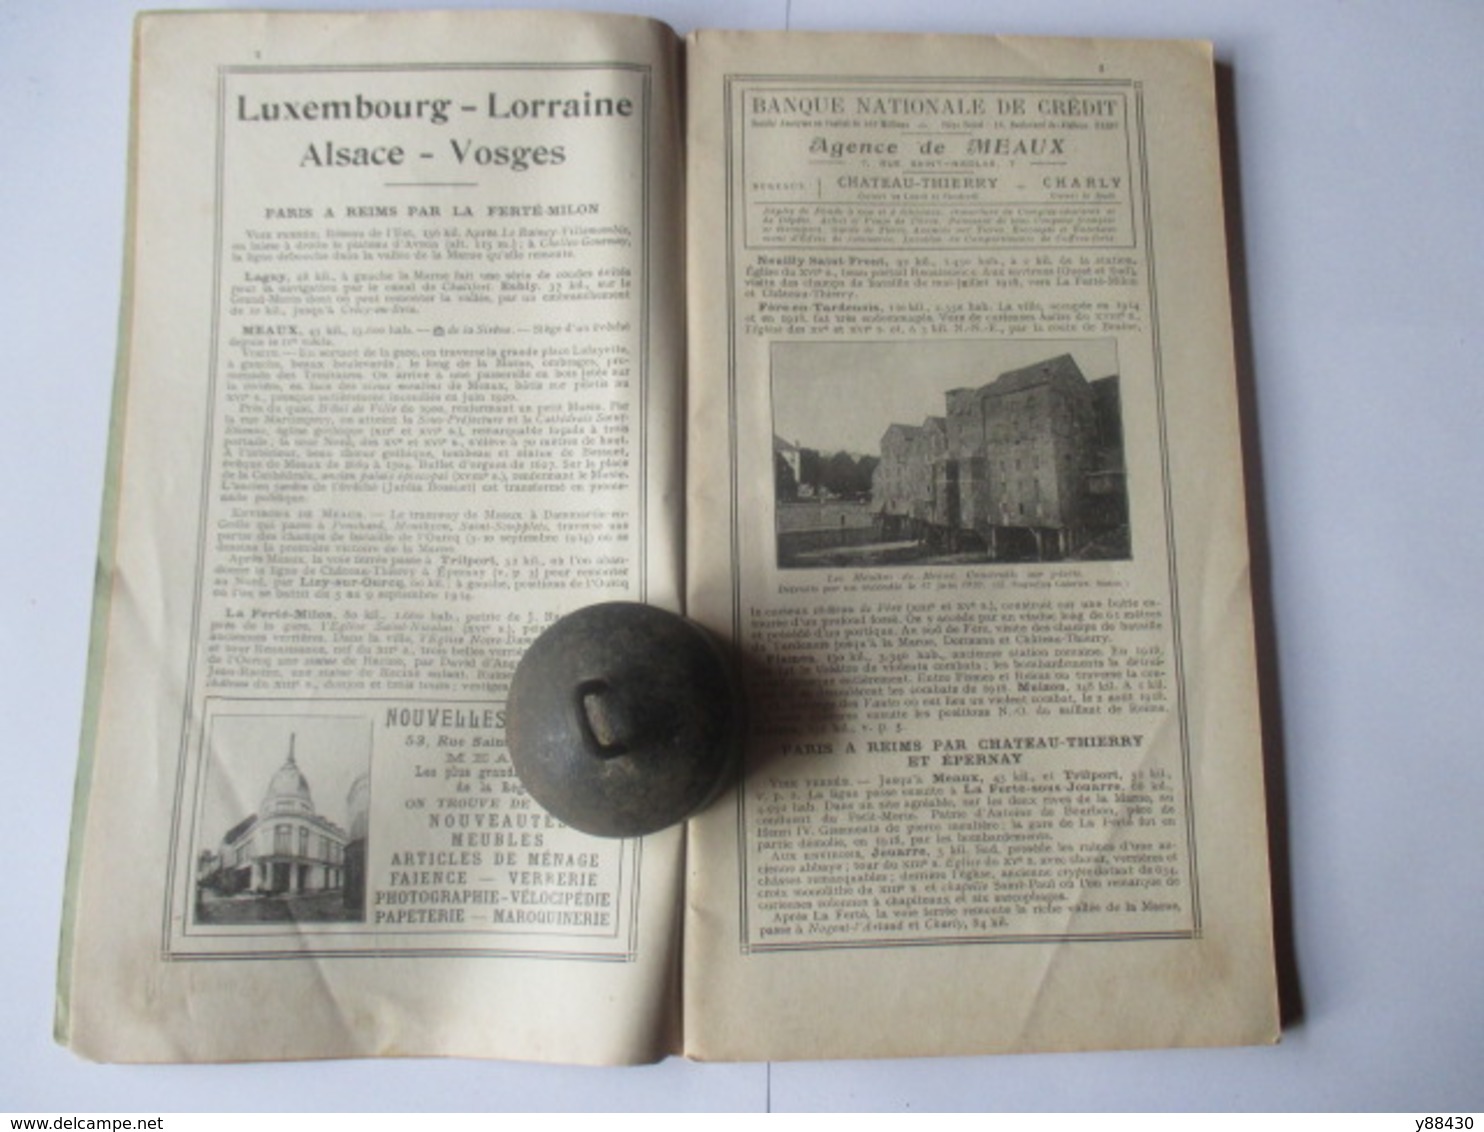 Livret Guides Du Touriste THIOLIER De 1923 - LUXEMBOURG / LORRAINE / ALSACE / VOSGES  - 124 Pages - 25 Photos - Dépliants Touristiques